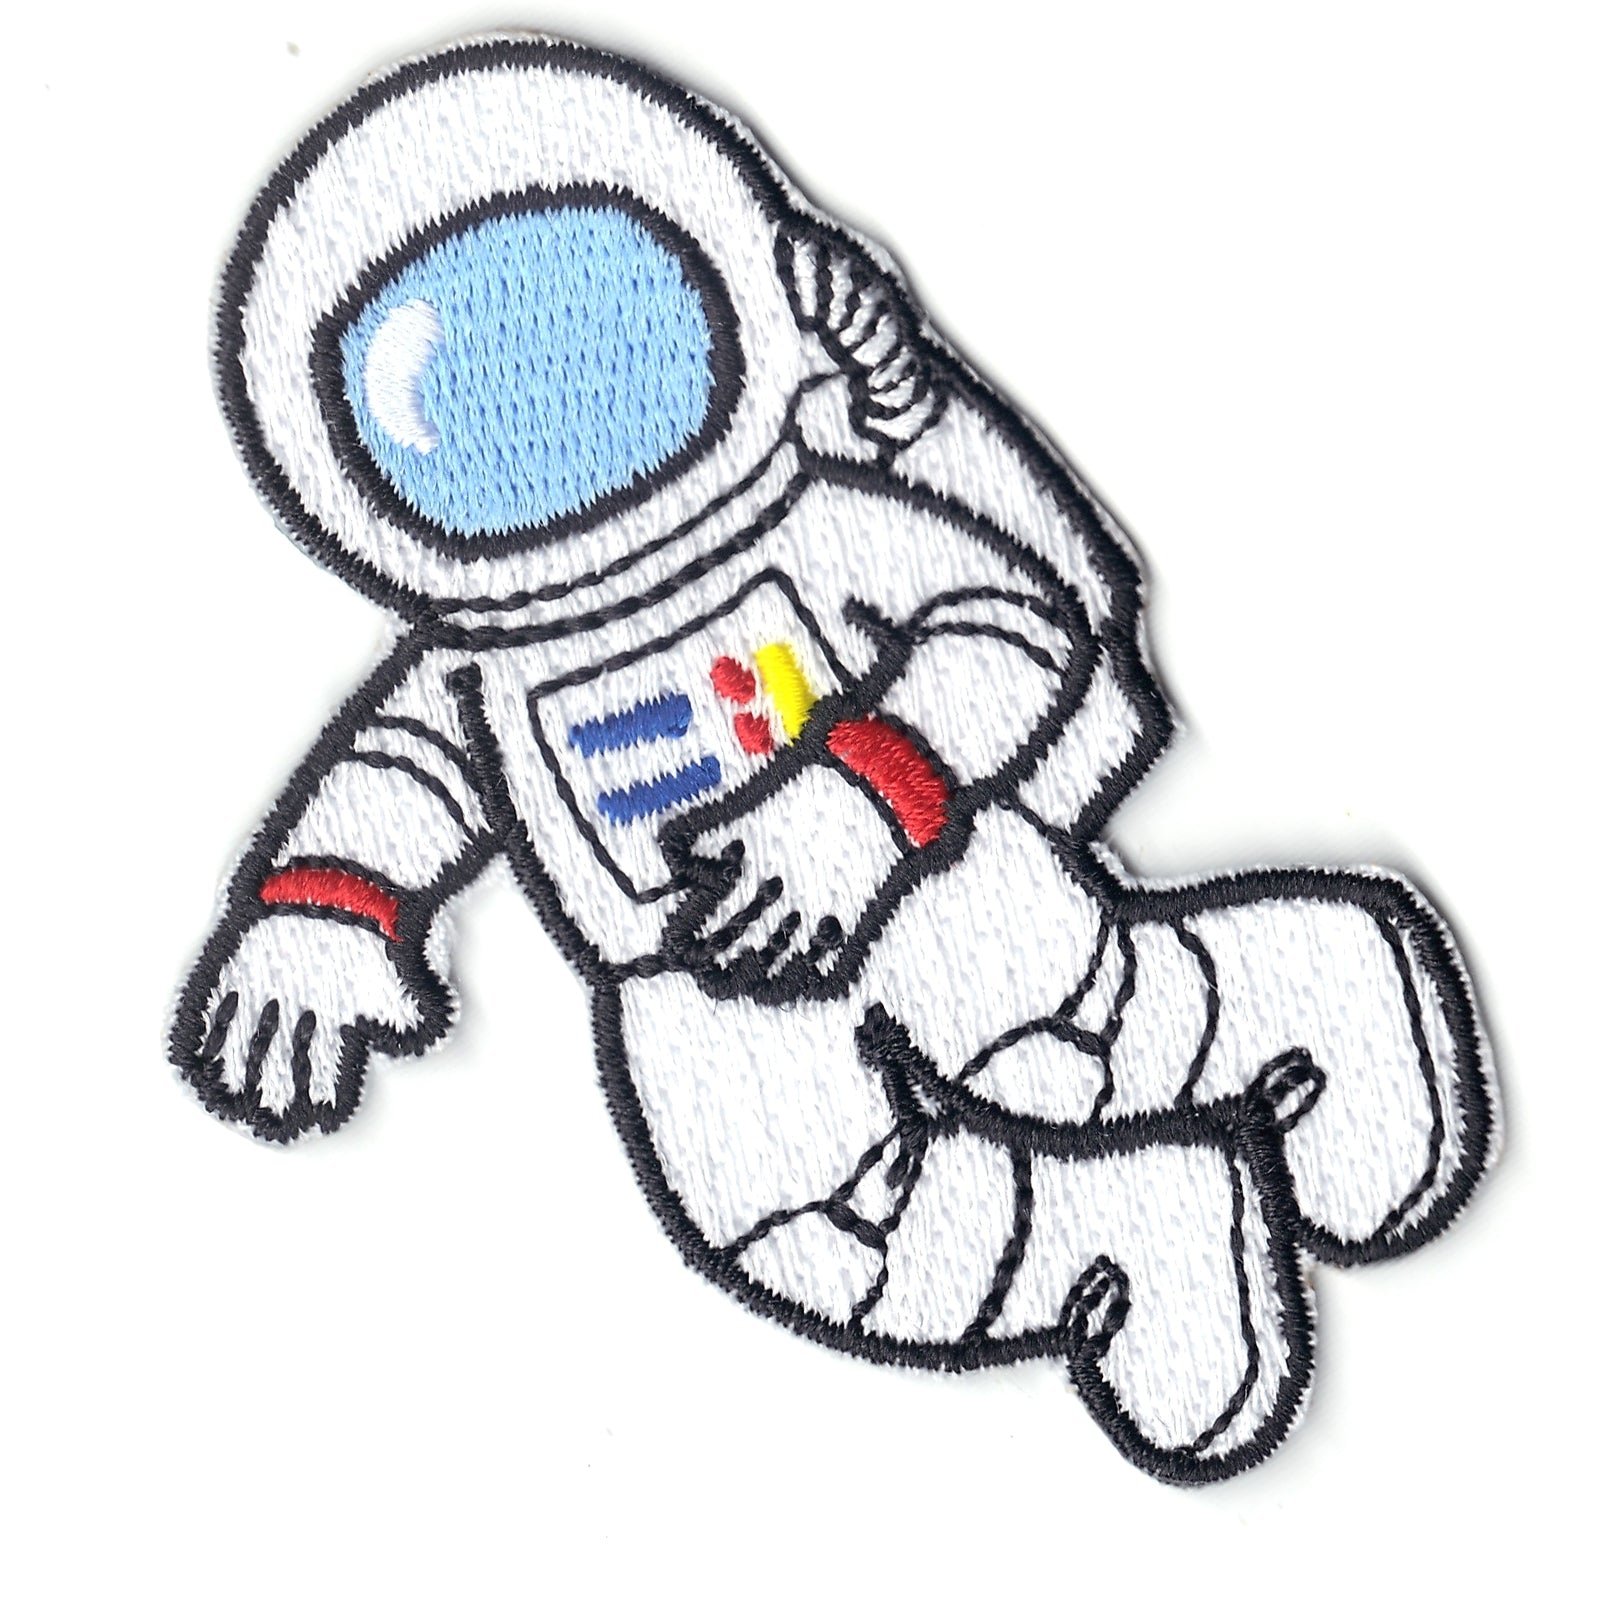 Космонавт картинки для детей дошкольного возраста. Космонавт рисунок. Космонавт рисунок цветной. Скафандр Космонавта для детей. Рисование космонавт.